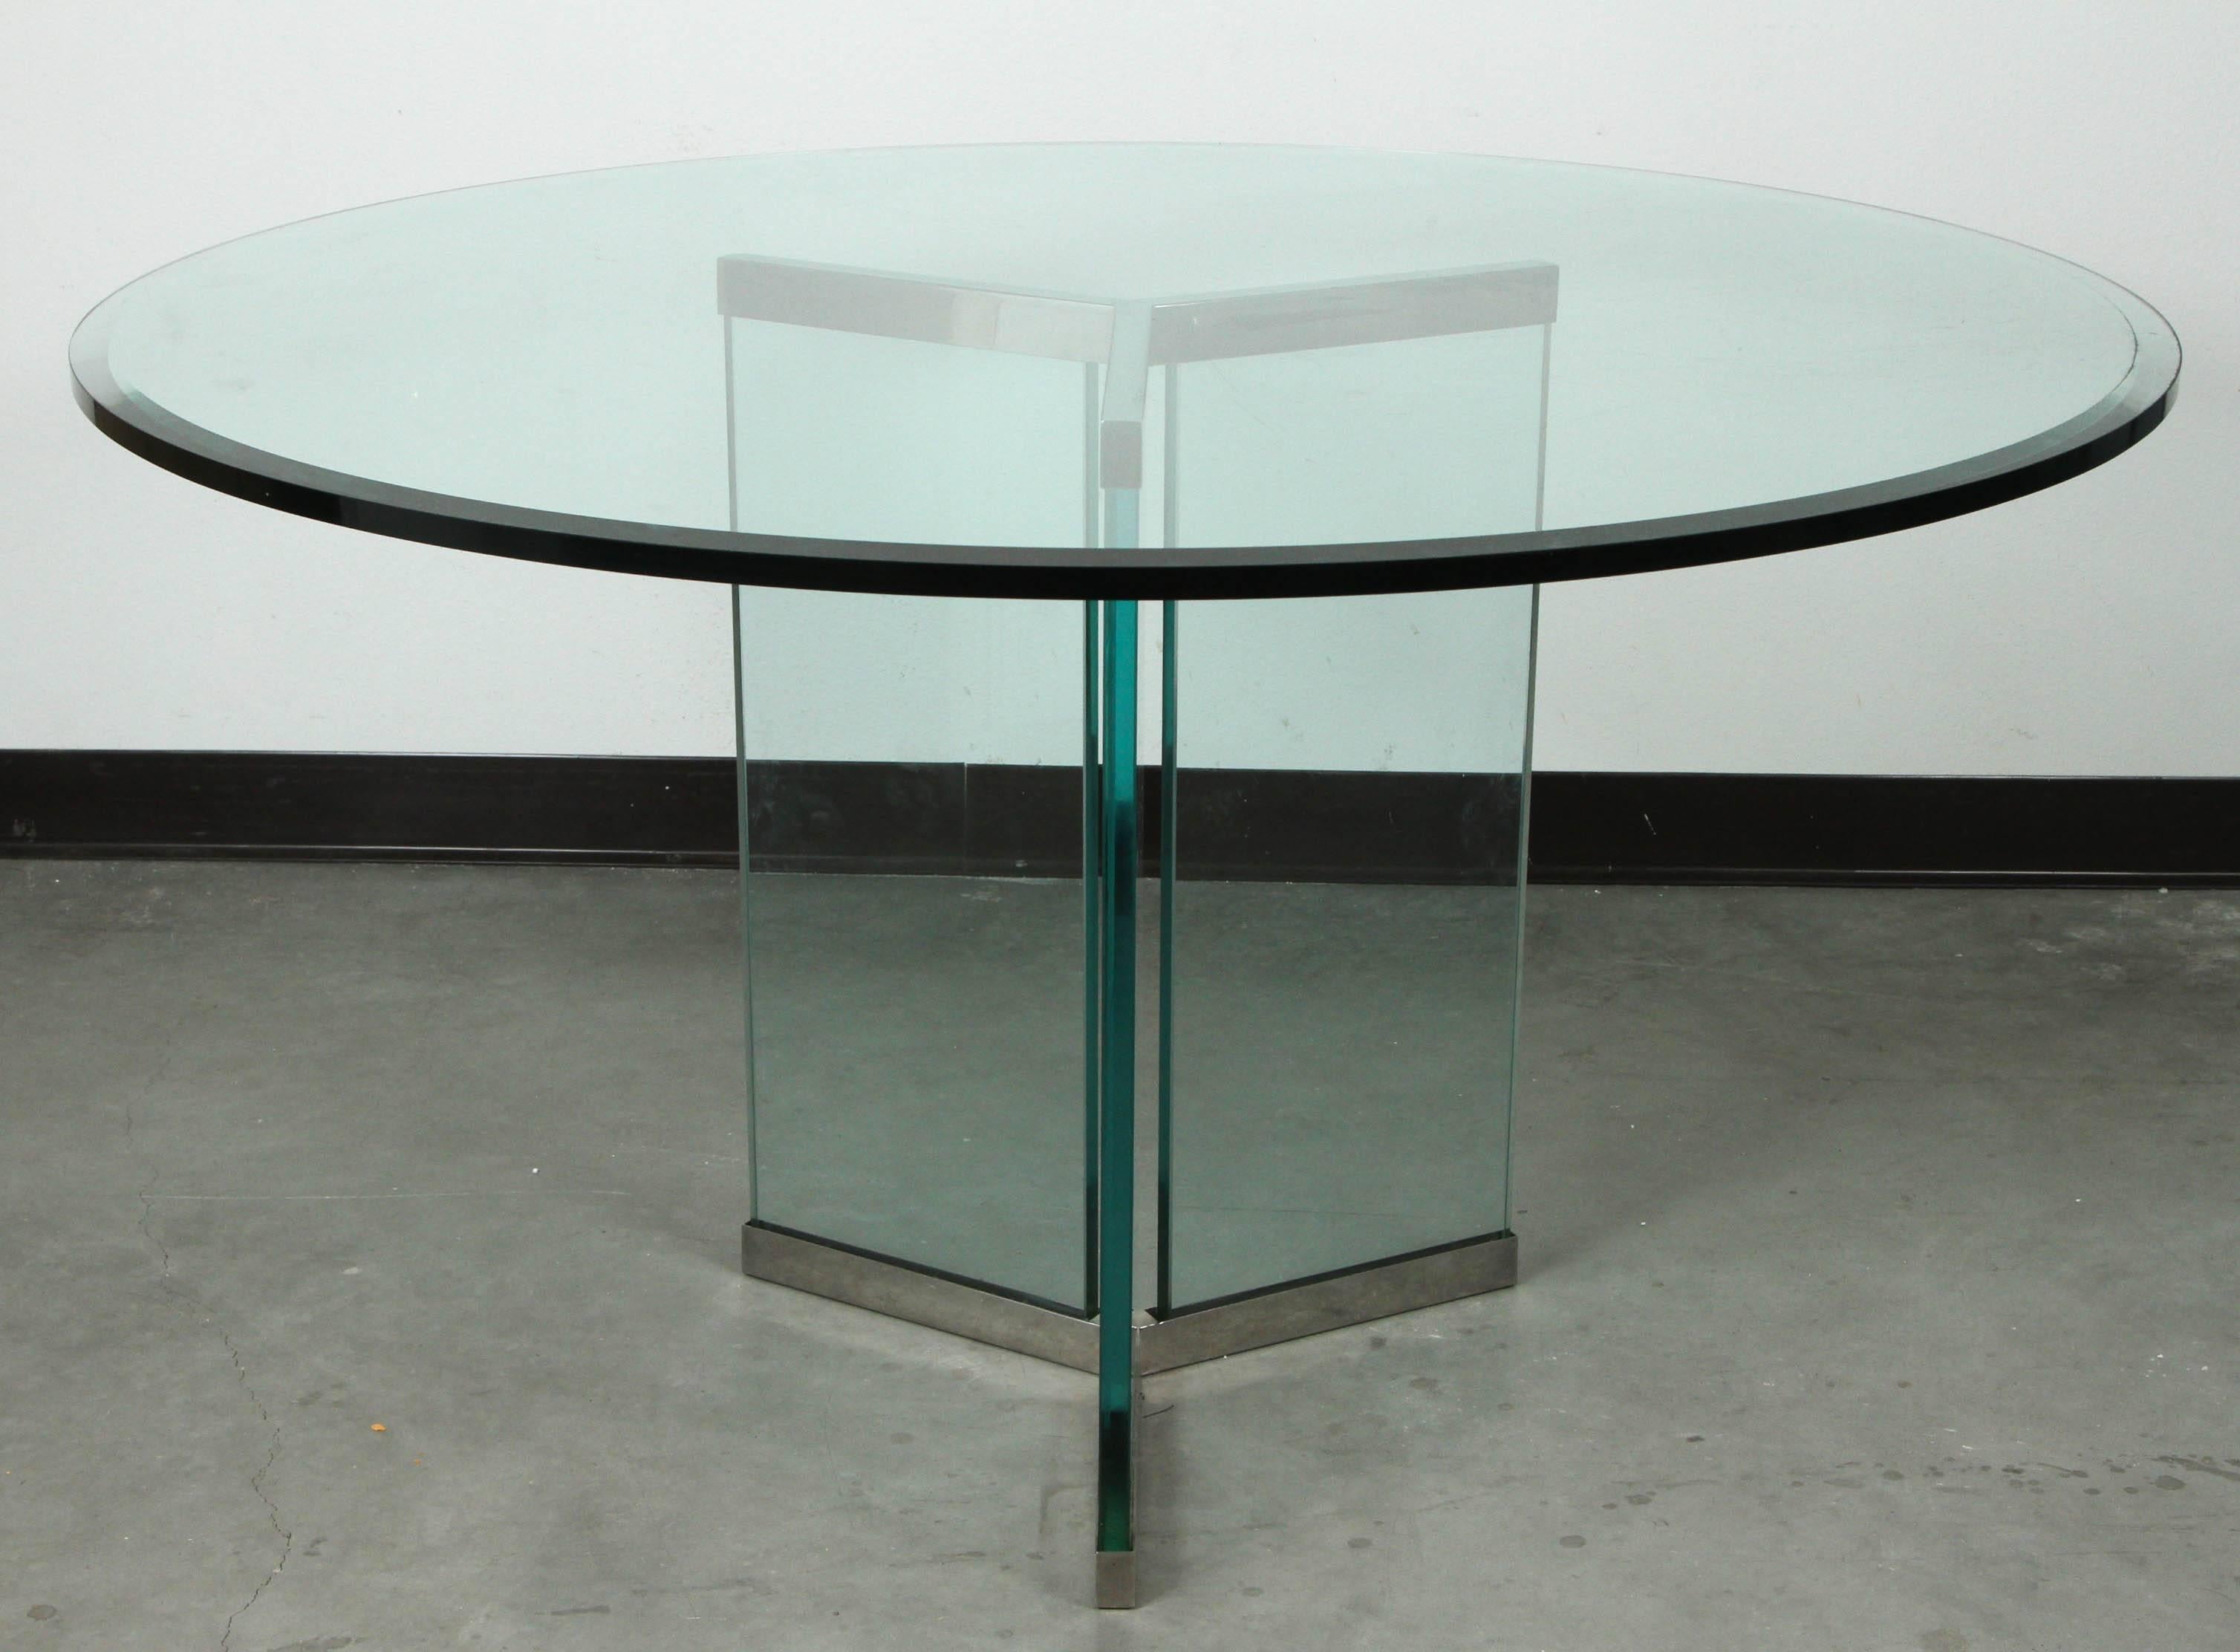 Table à manger minimaliste de Leon Rosen Pace. 
La base triangulaire en verre et en chrome poli supporte un plateau en verre de 42 pouces de diamètre et de 1/2 pouce d'épaisseur, ce qui crée un look simple et élégant.
